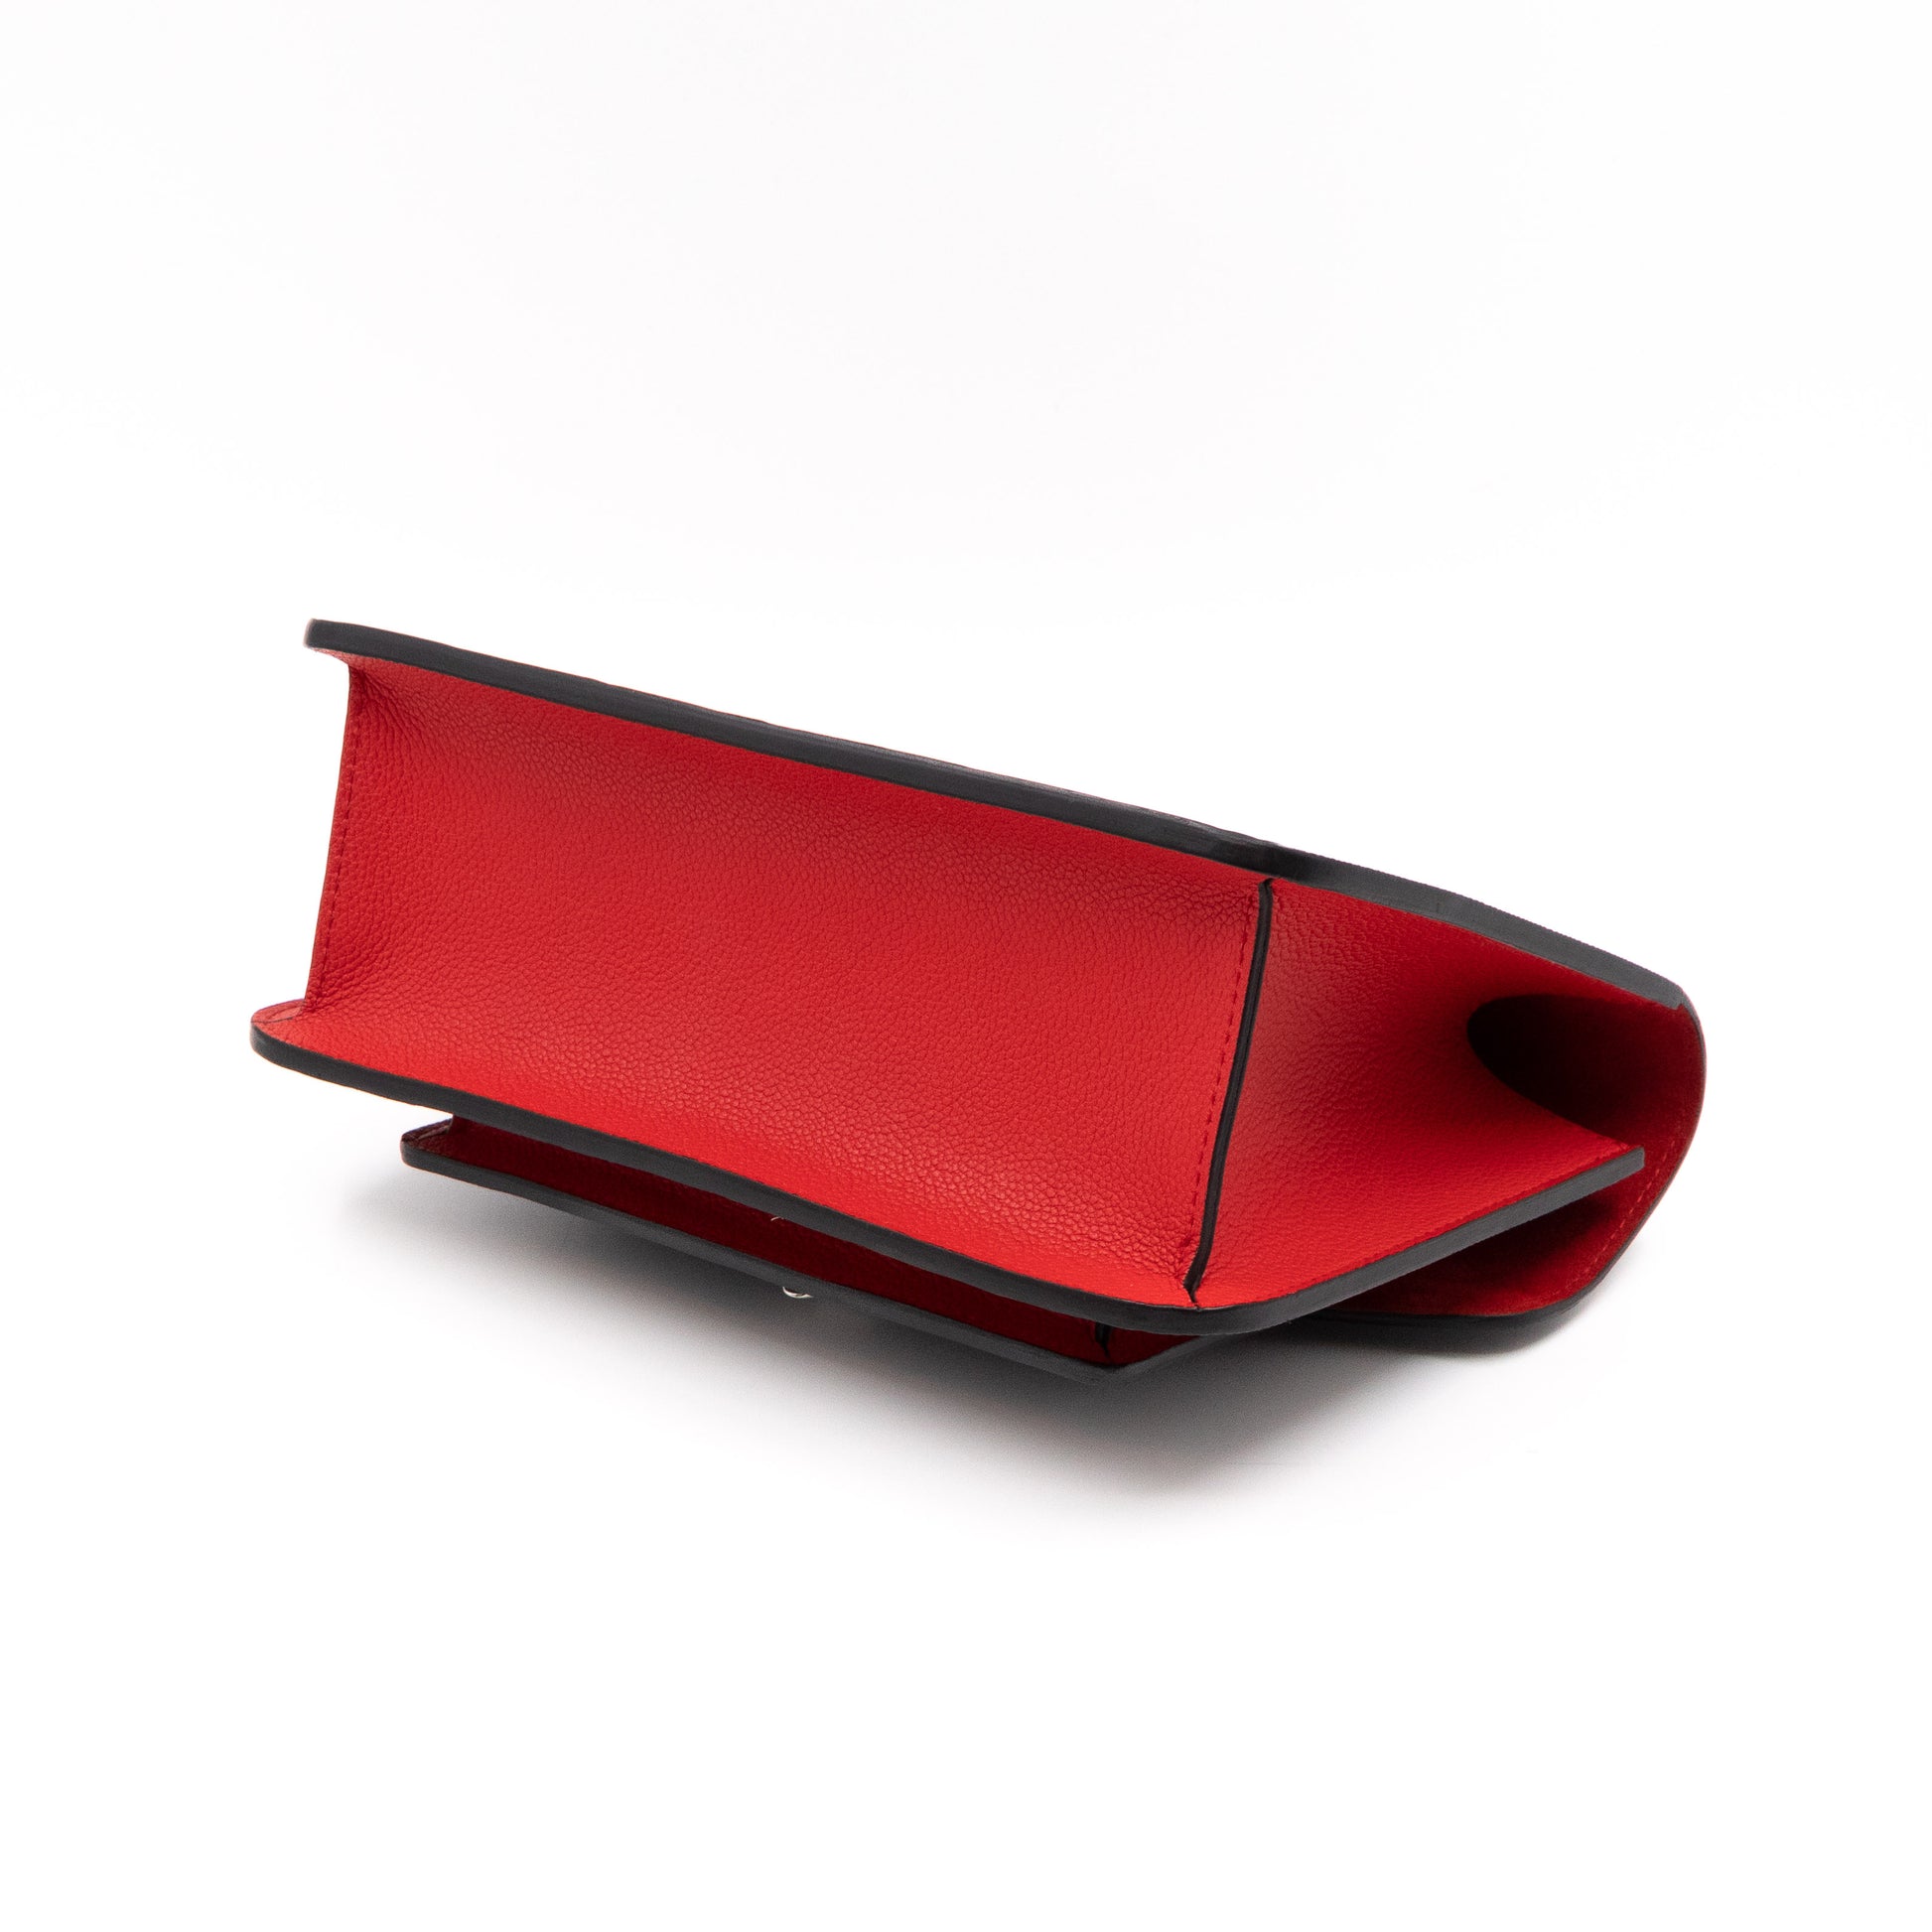 Louis Vuitton – Louis Vuitton Neo Monceau Epi Leather Black Red Blue –  Queen Station